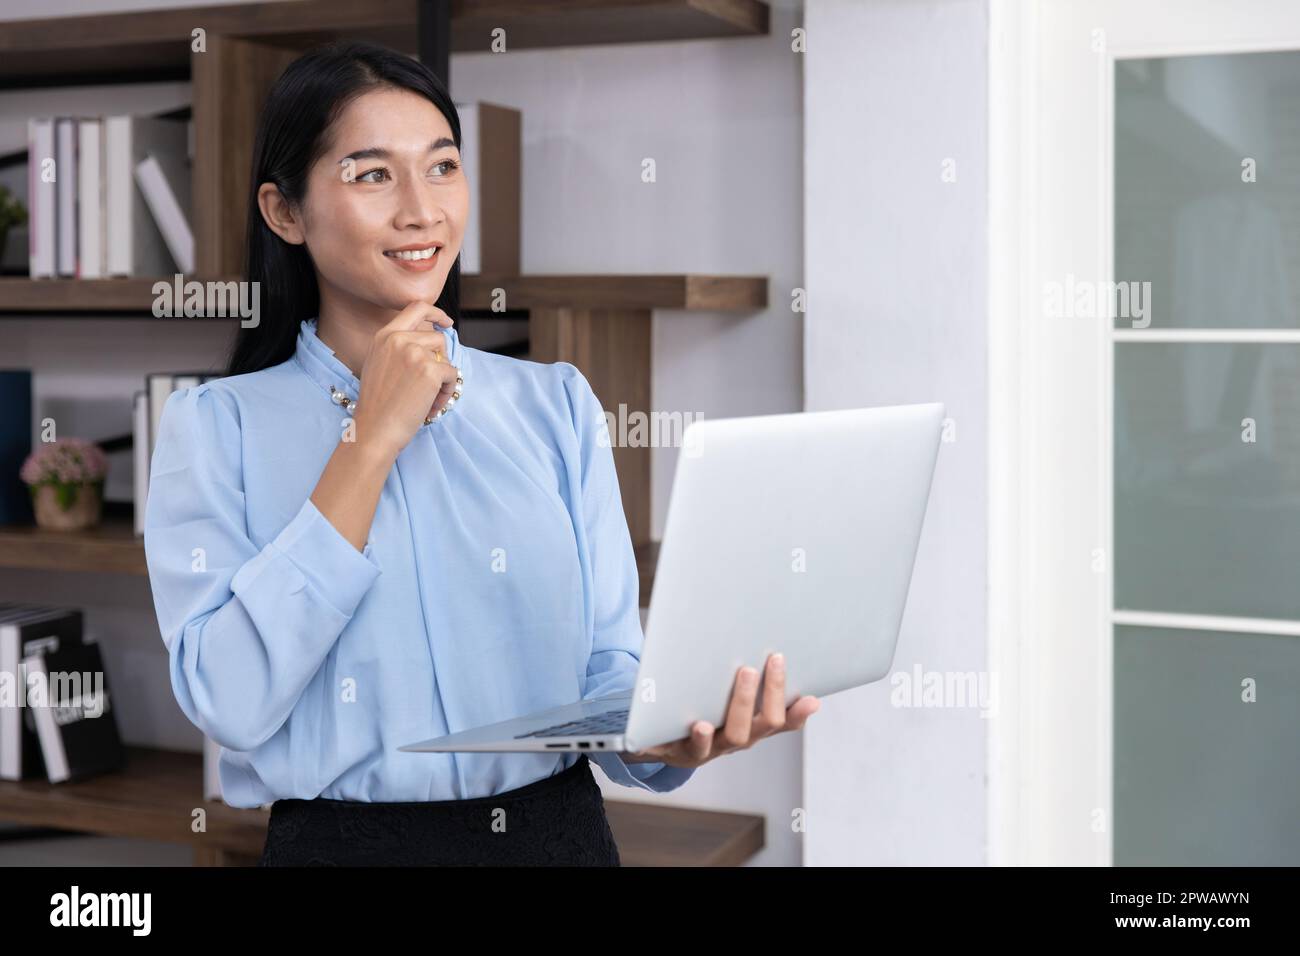 Smart Vision Donna leader. Impiegato d'ufficio busineeswoman con computer portatile pensando espressione sorriso. Foto Stock